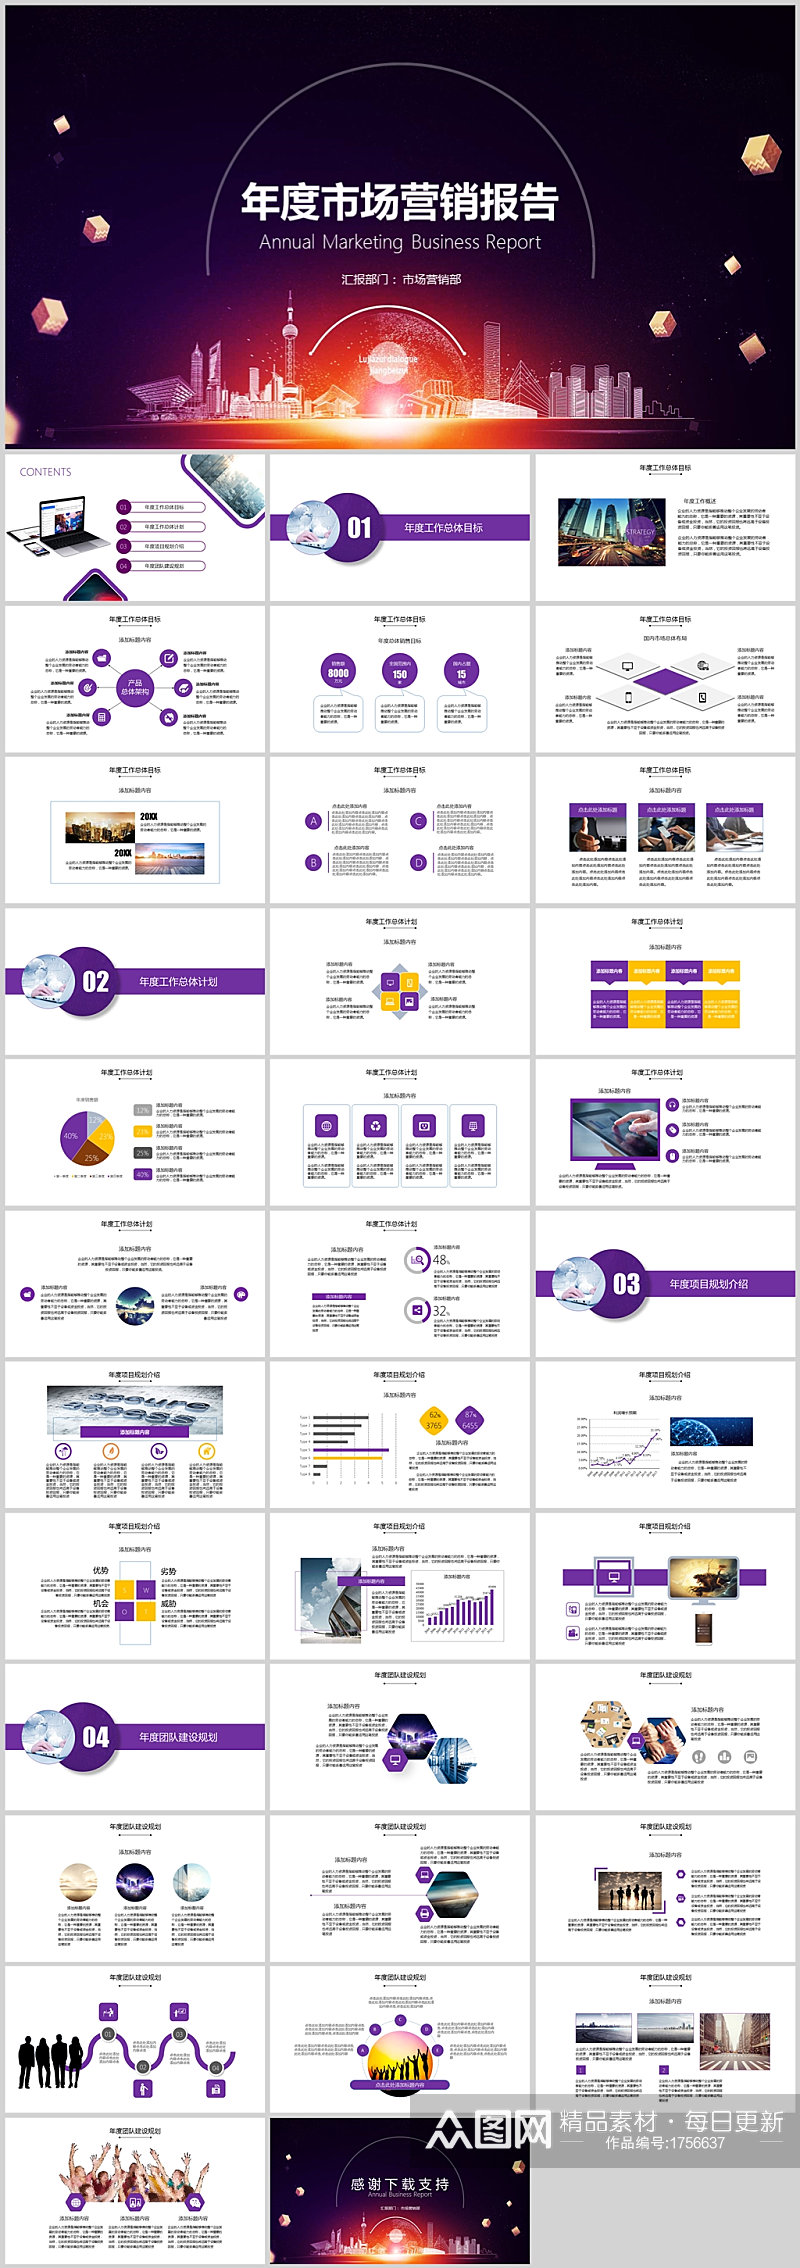 紫色简约市场营销年度商务报告模板素材